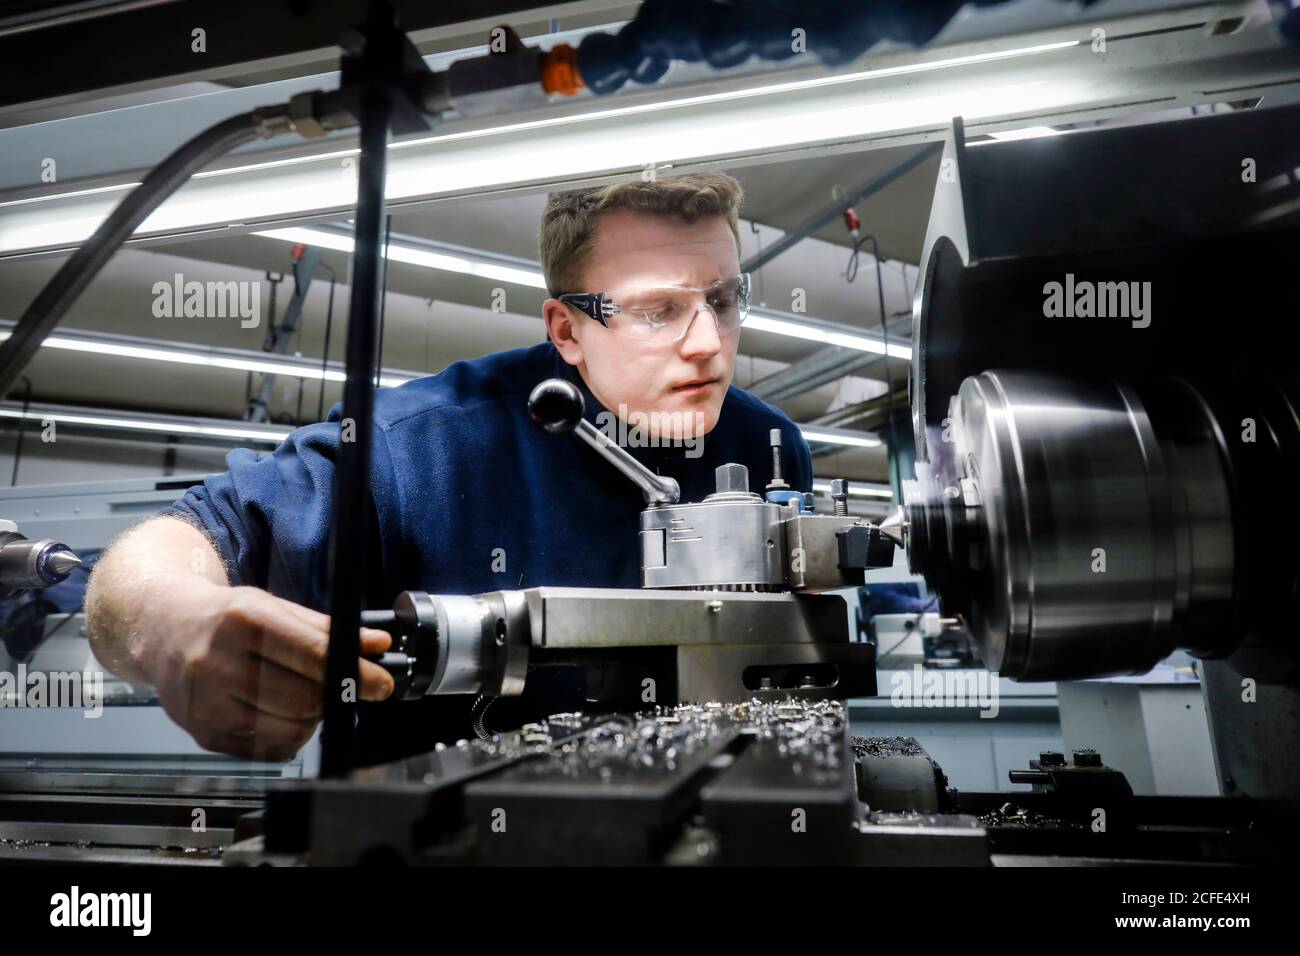 Remscheid, Rhénanie-du-Nord-Westphalie, Allemagne - apprentis dans les métiers de la métallurgie, ici dans une machine-outil, centre de formation professionnelle du Remscheid Banque D'Images